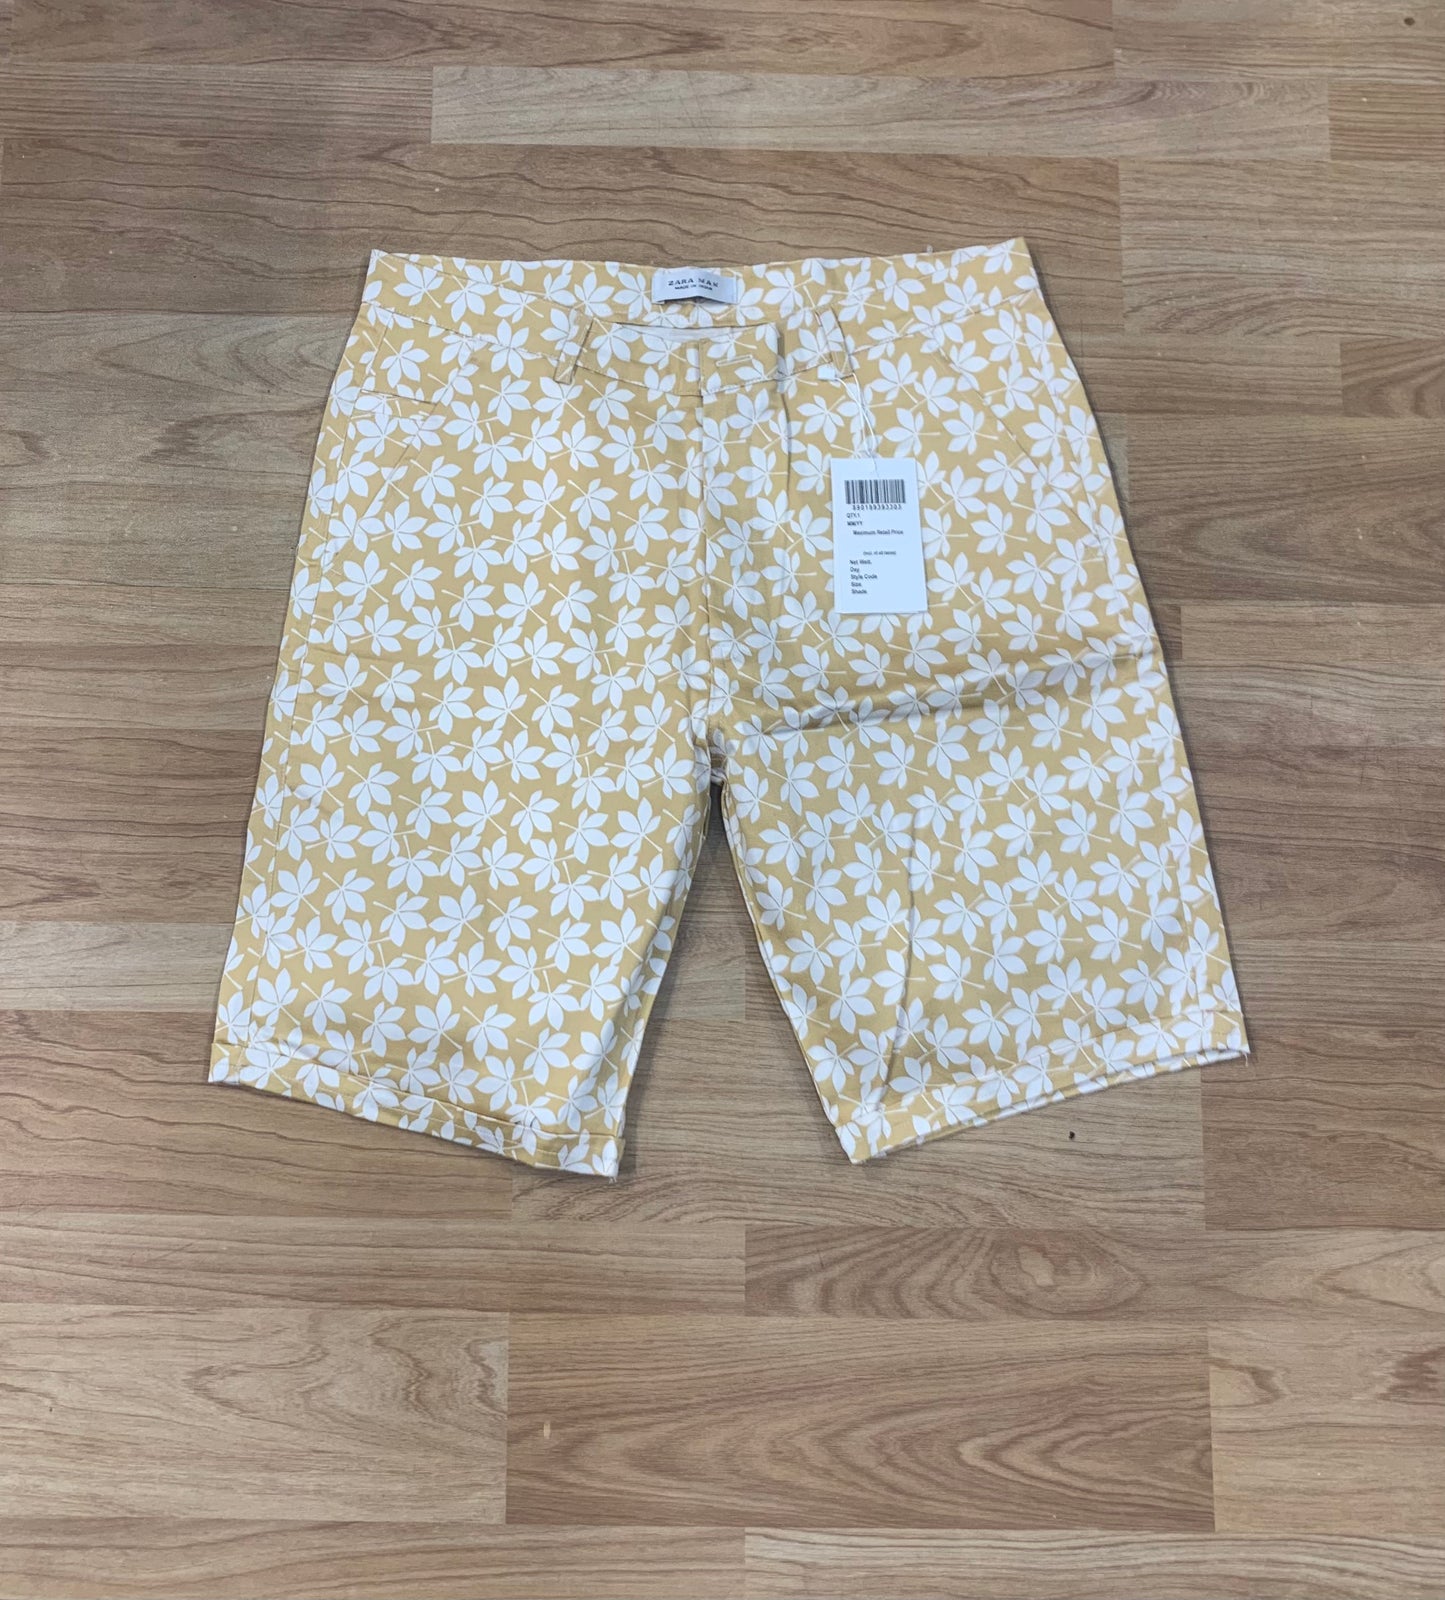 ZR RAZ Yellow Colour with White Flower Print Premium Quality Cotton Shorts 99932